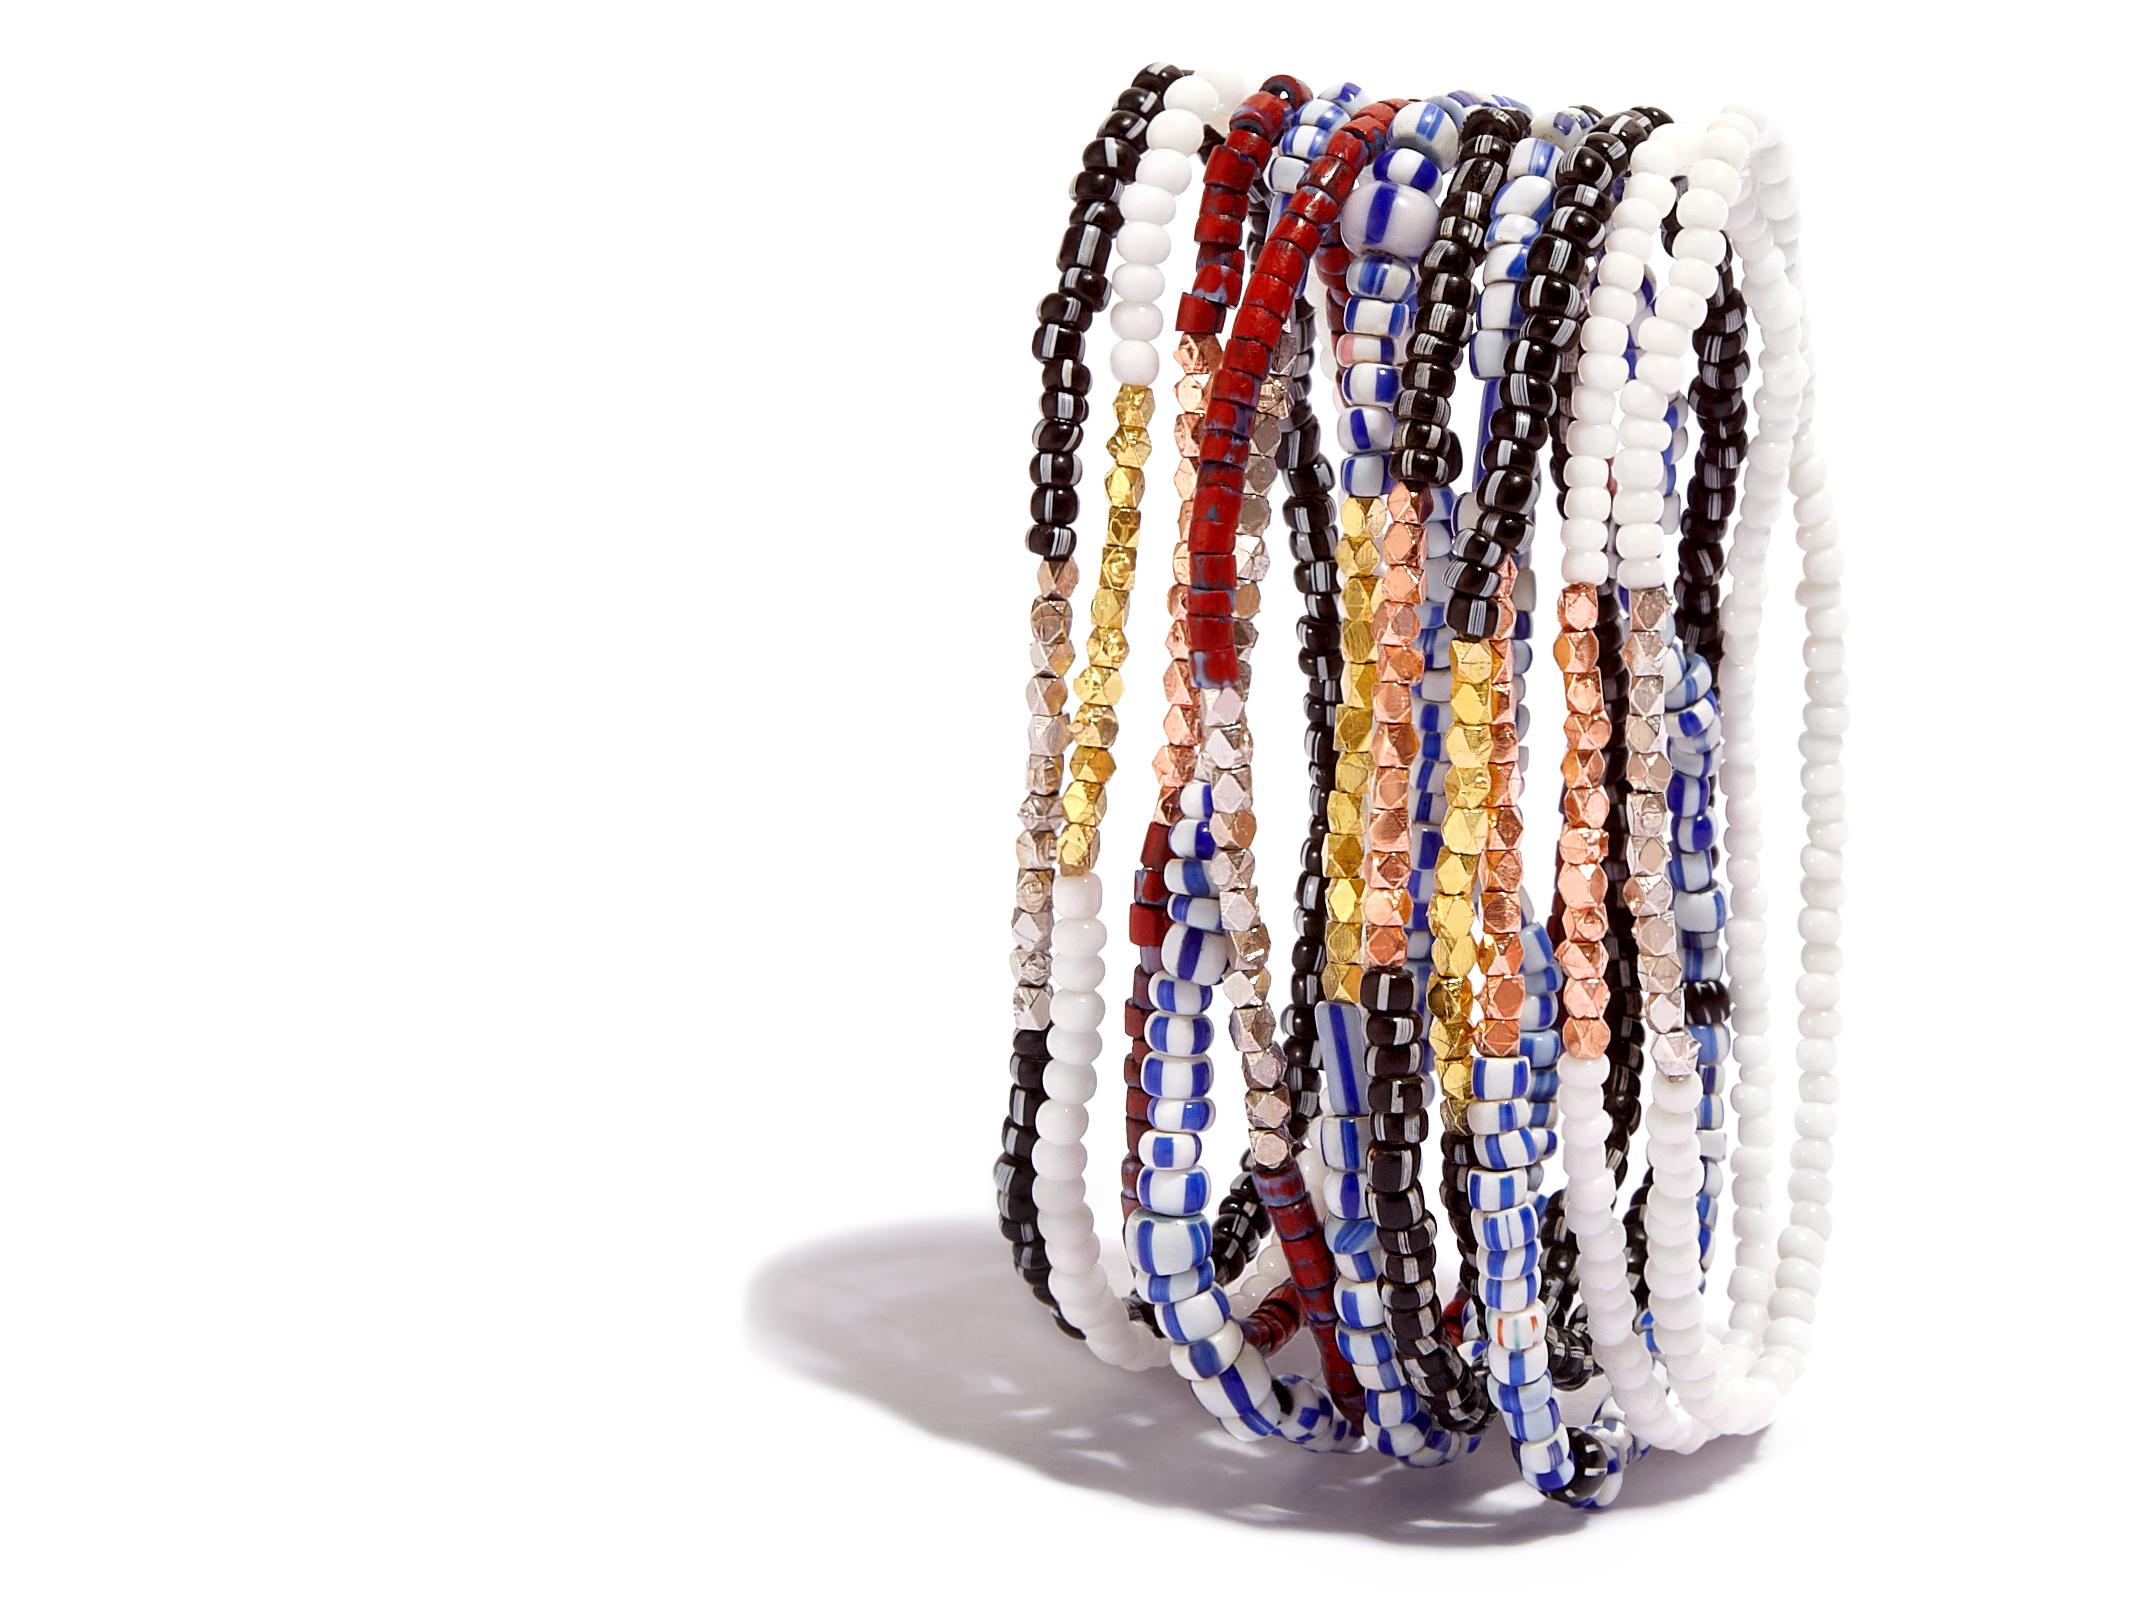 Dieses Frauenarmband besteht aus antiken weißen venezianischen Glasperlen, die mit einem Zoll massiven 14-karätigen Roségoldperlen akzentuiert sind.  Die Struktur ist stark, gespannt und elastisch.

Diese antiken venezianischen Perlen wurden in den